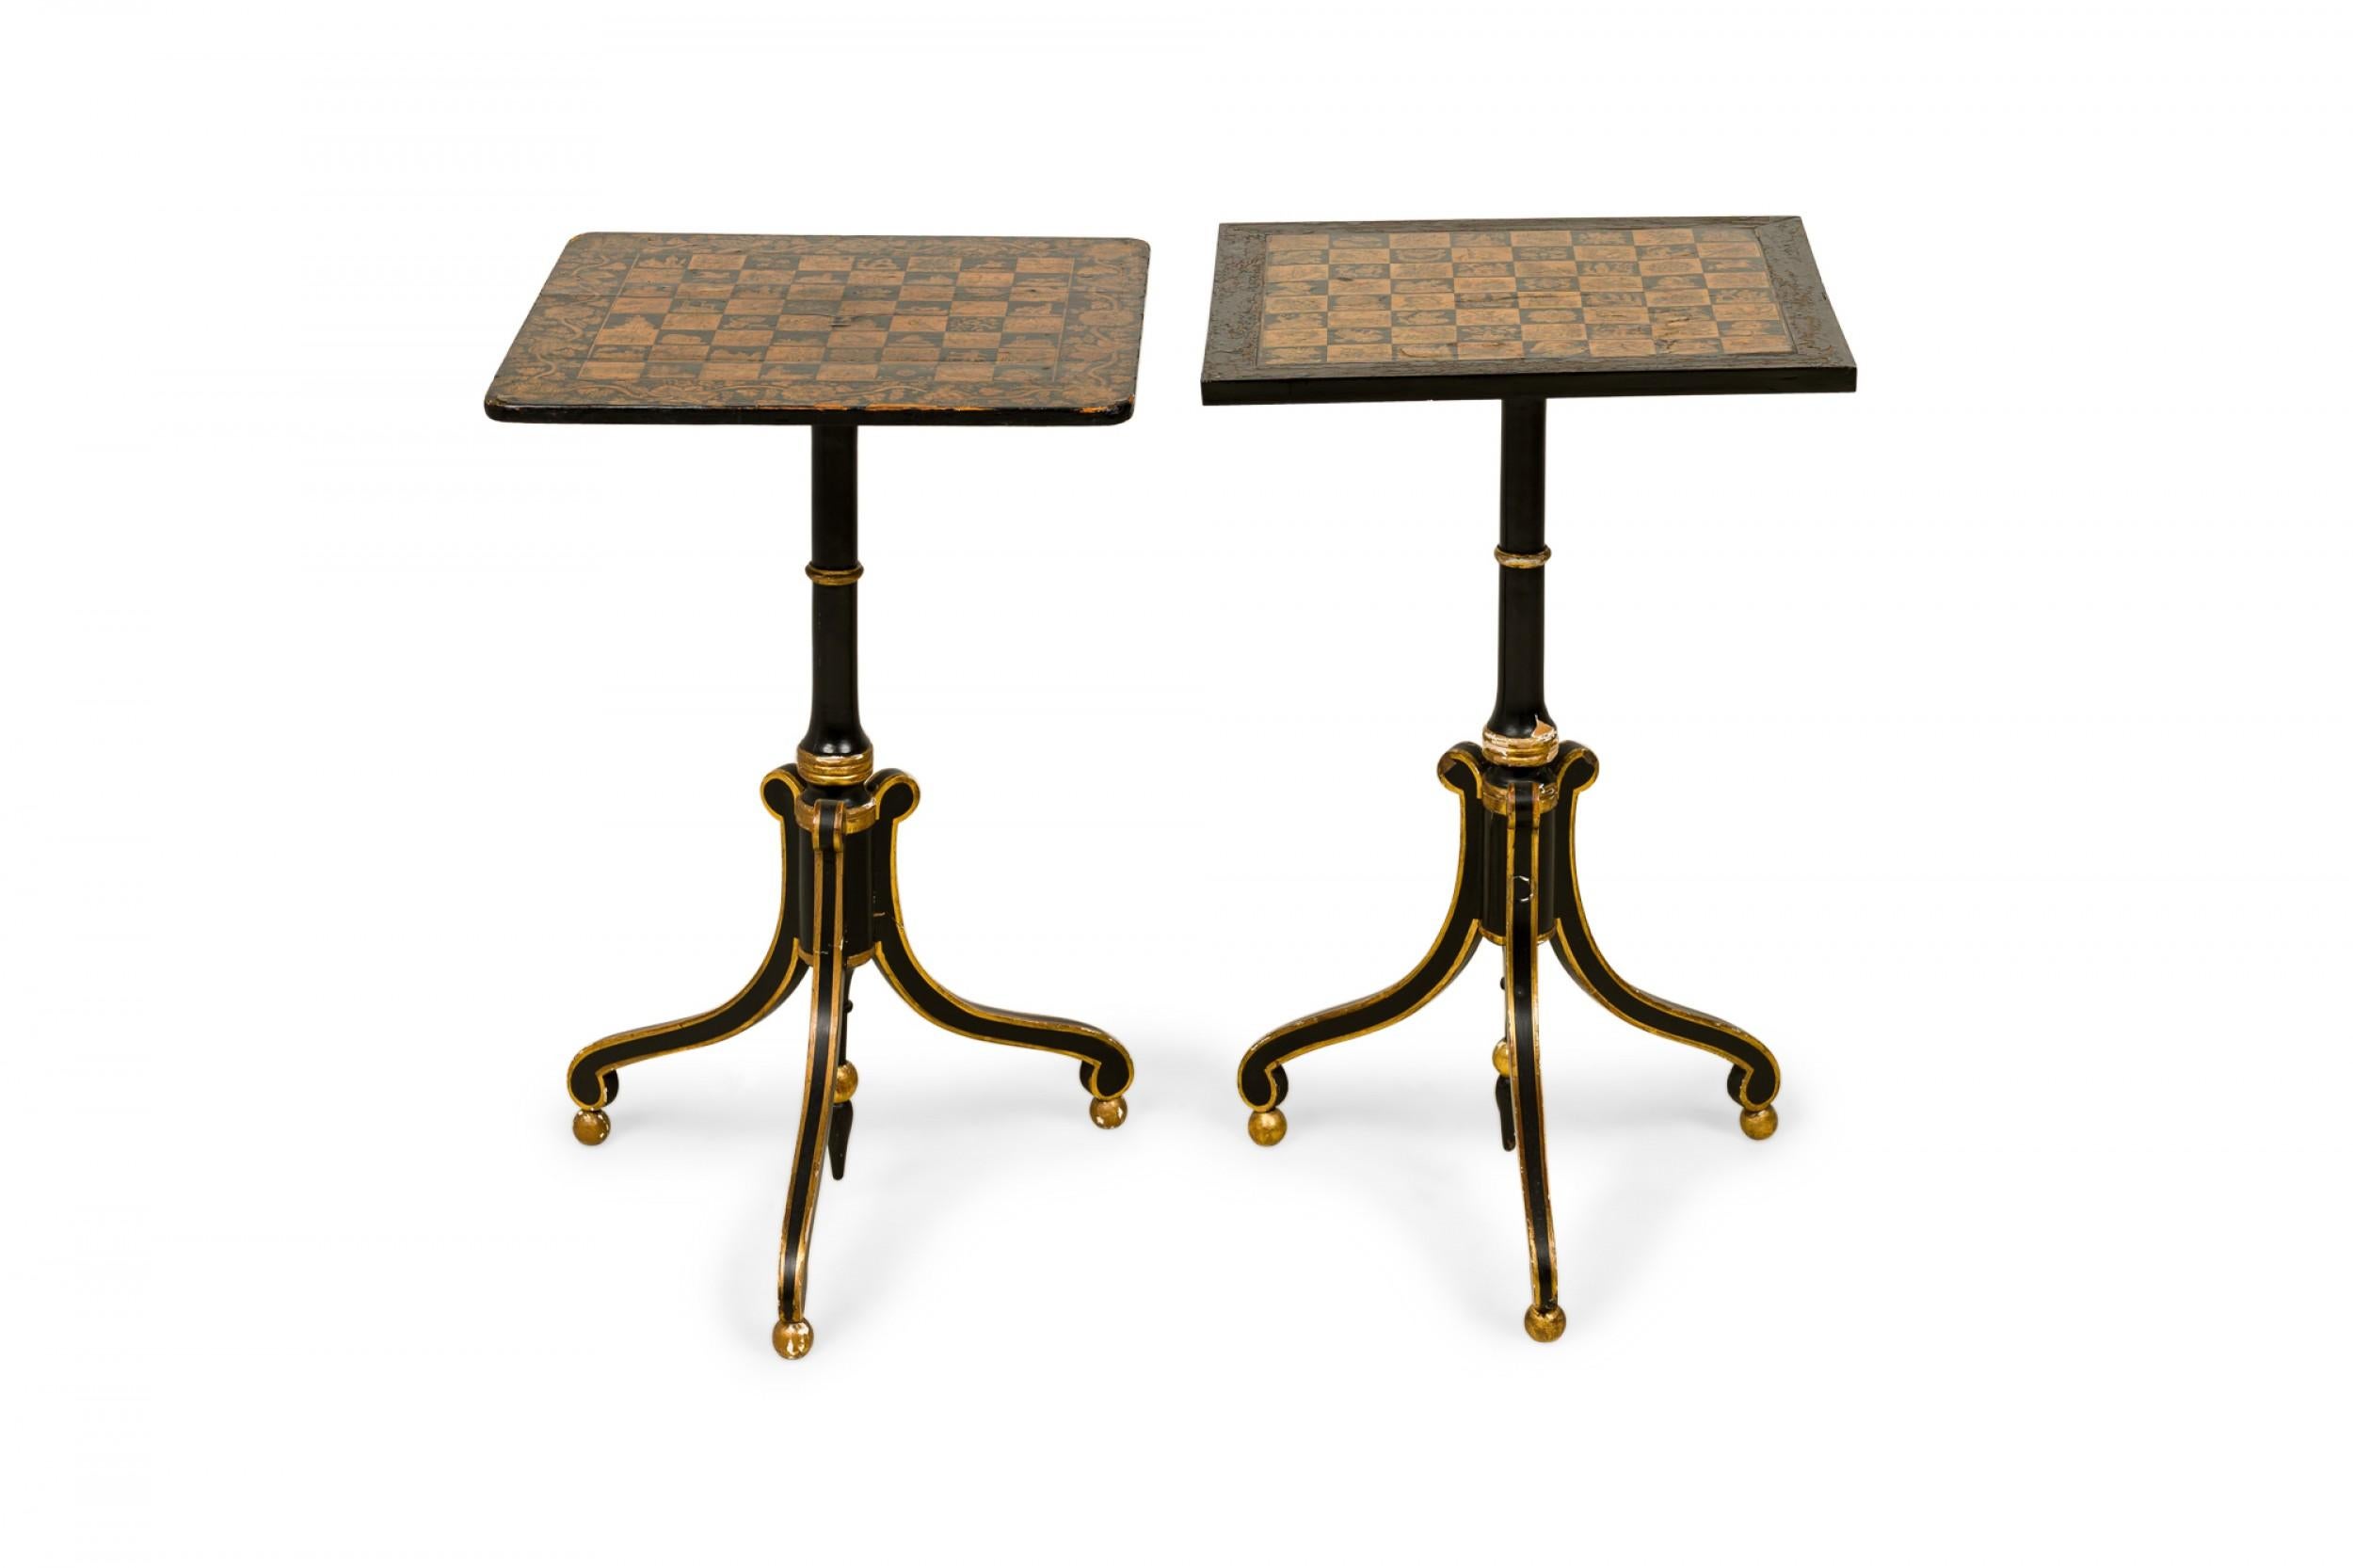 Ein Paar ähnlicher englischer Regency-Schachtische mit quadratischen Holzplatten, auf denen in Schwarz und Gold bemalte Schachbretter mit kunstvollen Mustern in jedem Quadrat abgebildet sind, umgeben von einer Blattbordüre, die auf Sockeln mit drei